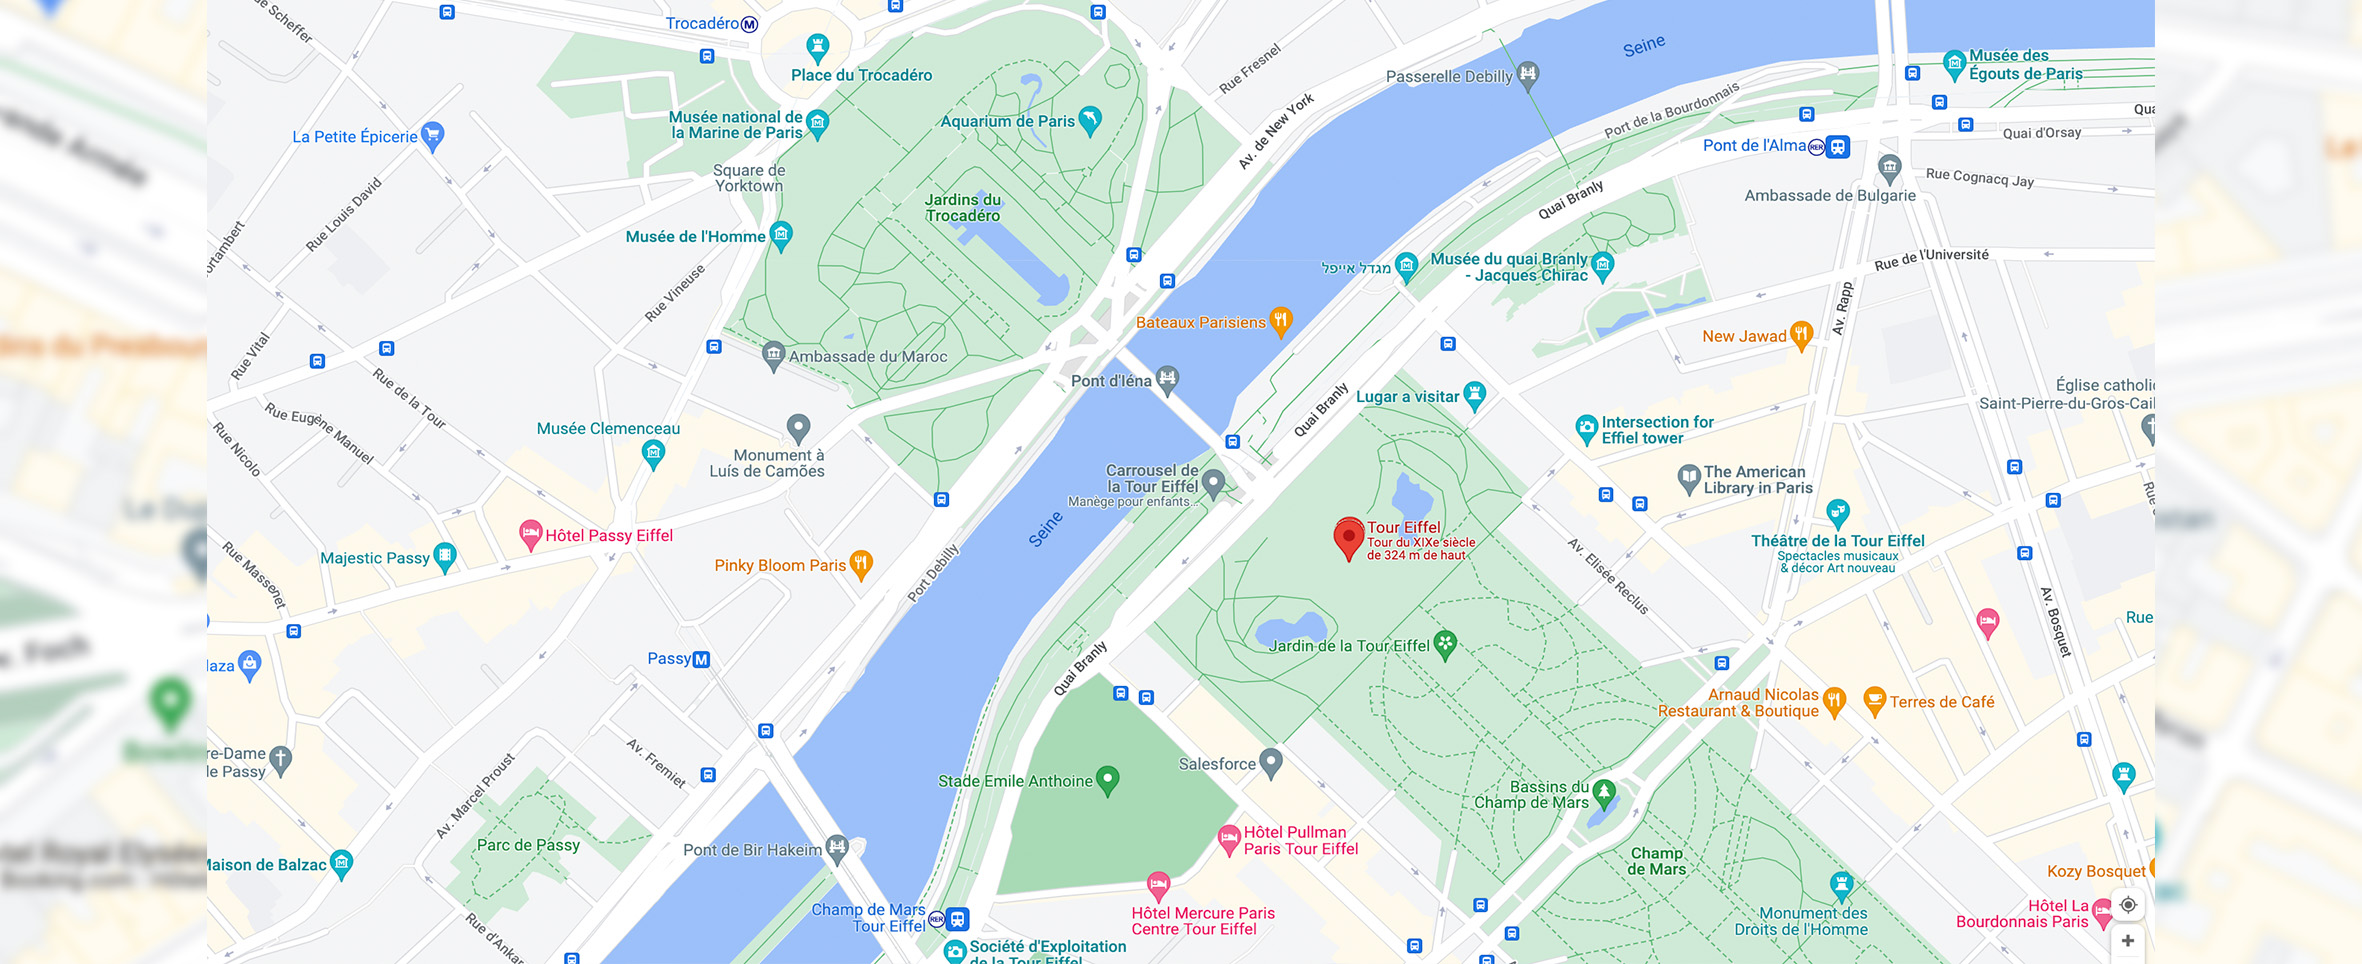 Mapa para llegar a la Torre Eiffel